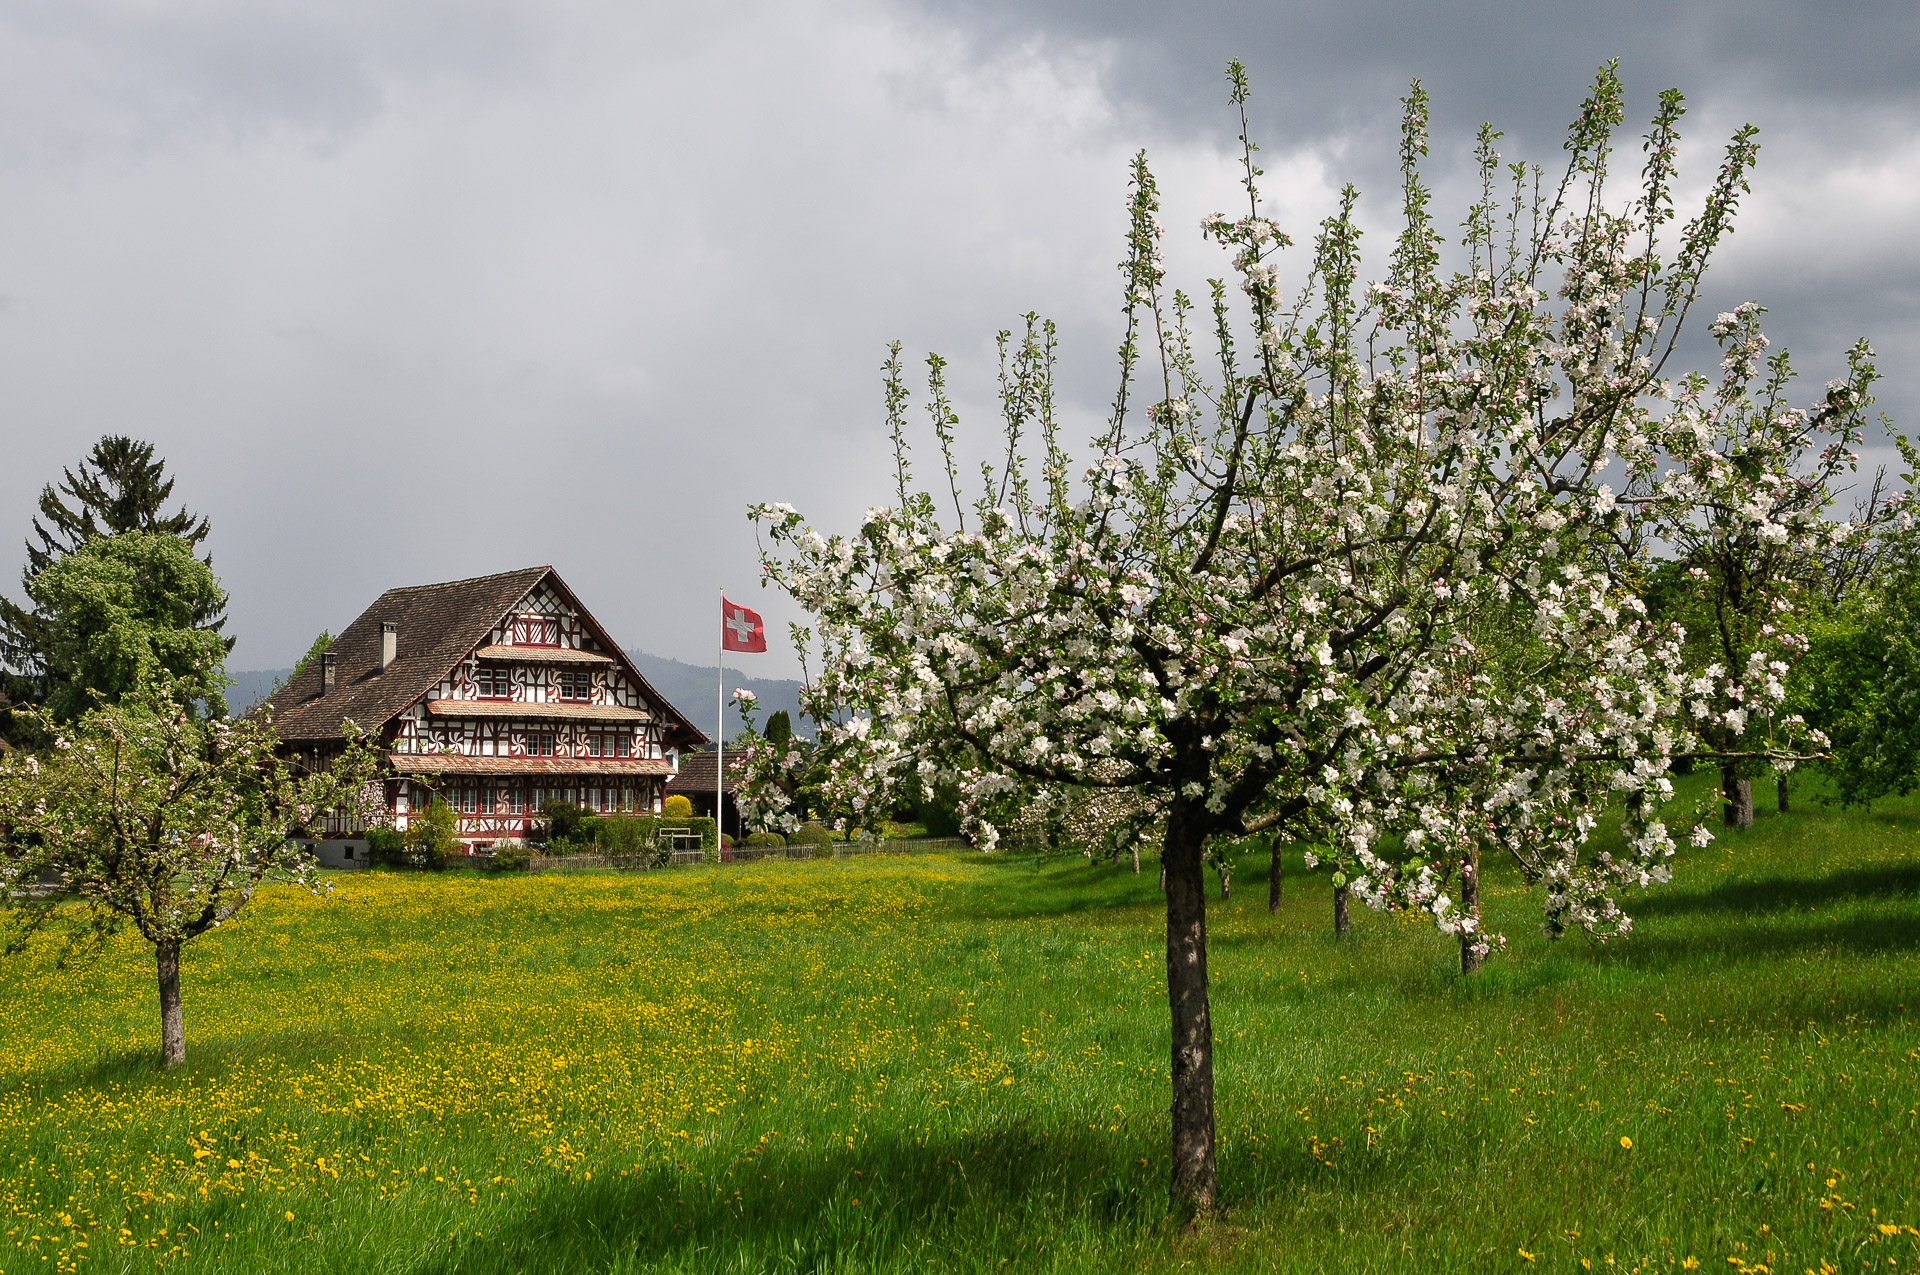 Eglihaus in Lutikon mit blühenden Apfelbäumen am 18. April 2017 um 14.20 Uhr